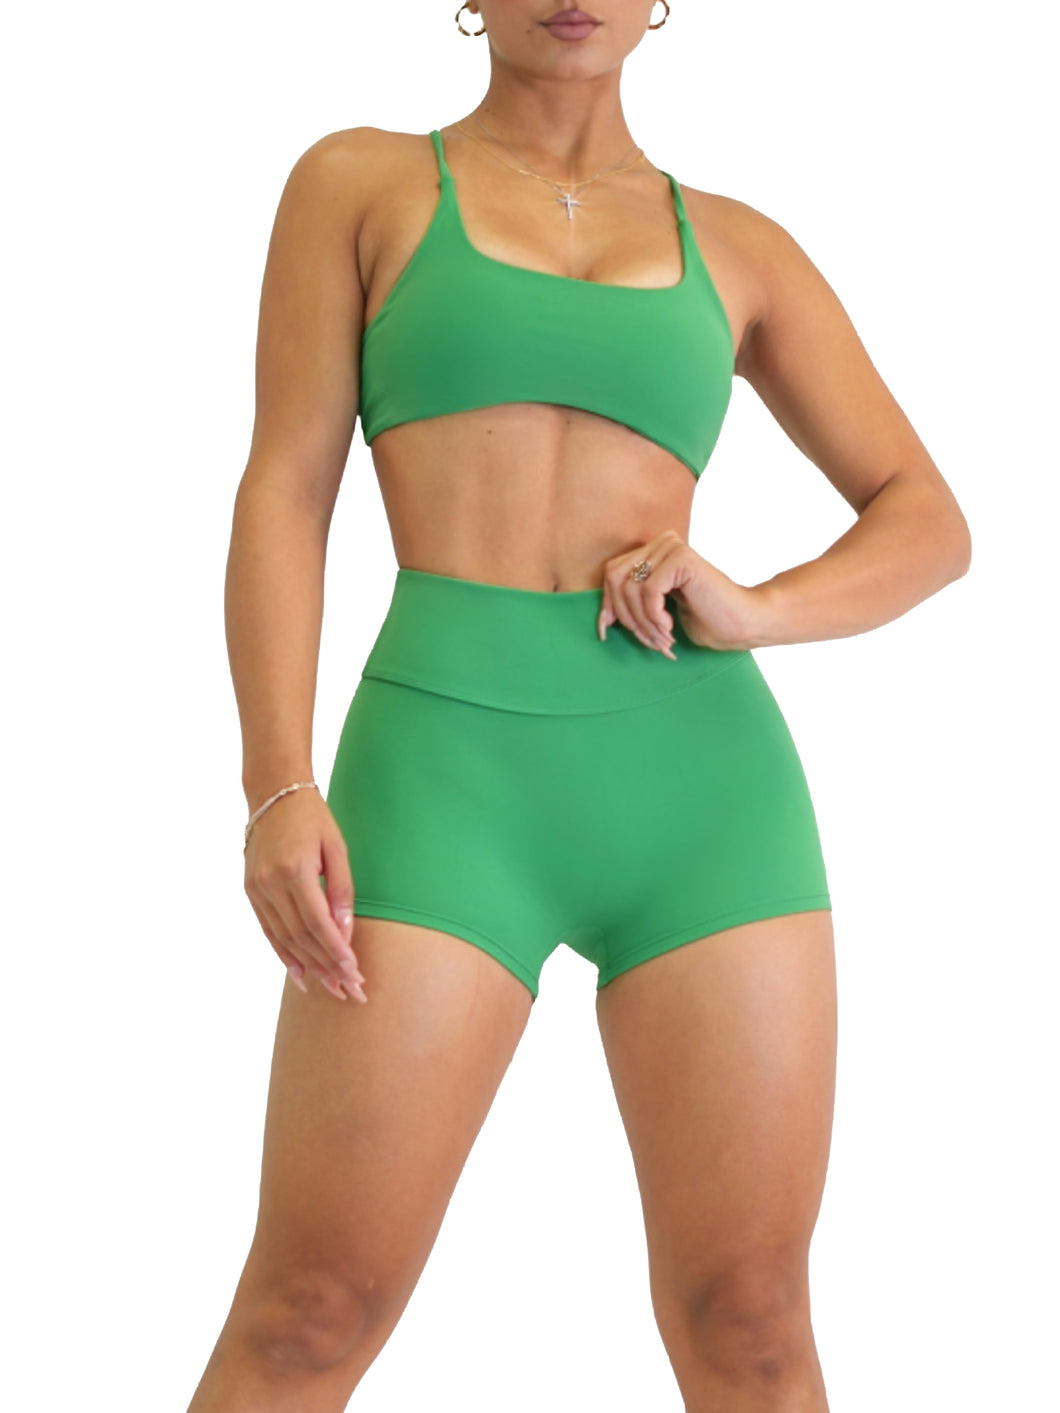 Itty Bitty Sexy Back Sports Bra (Emerald Green)